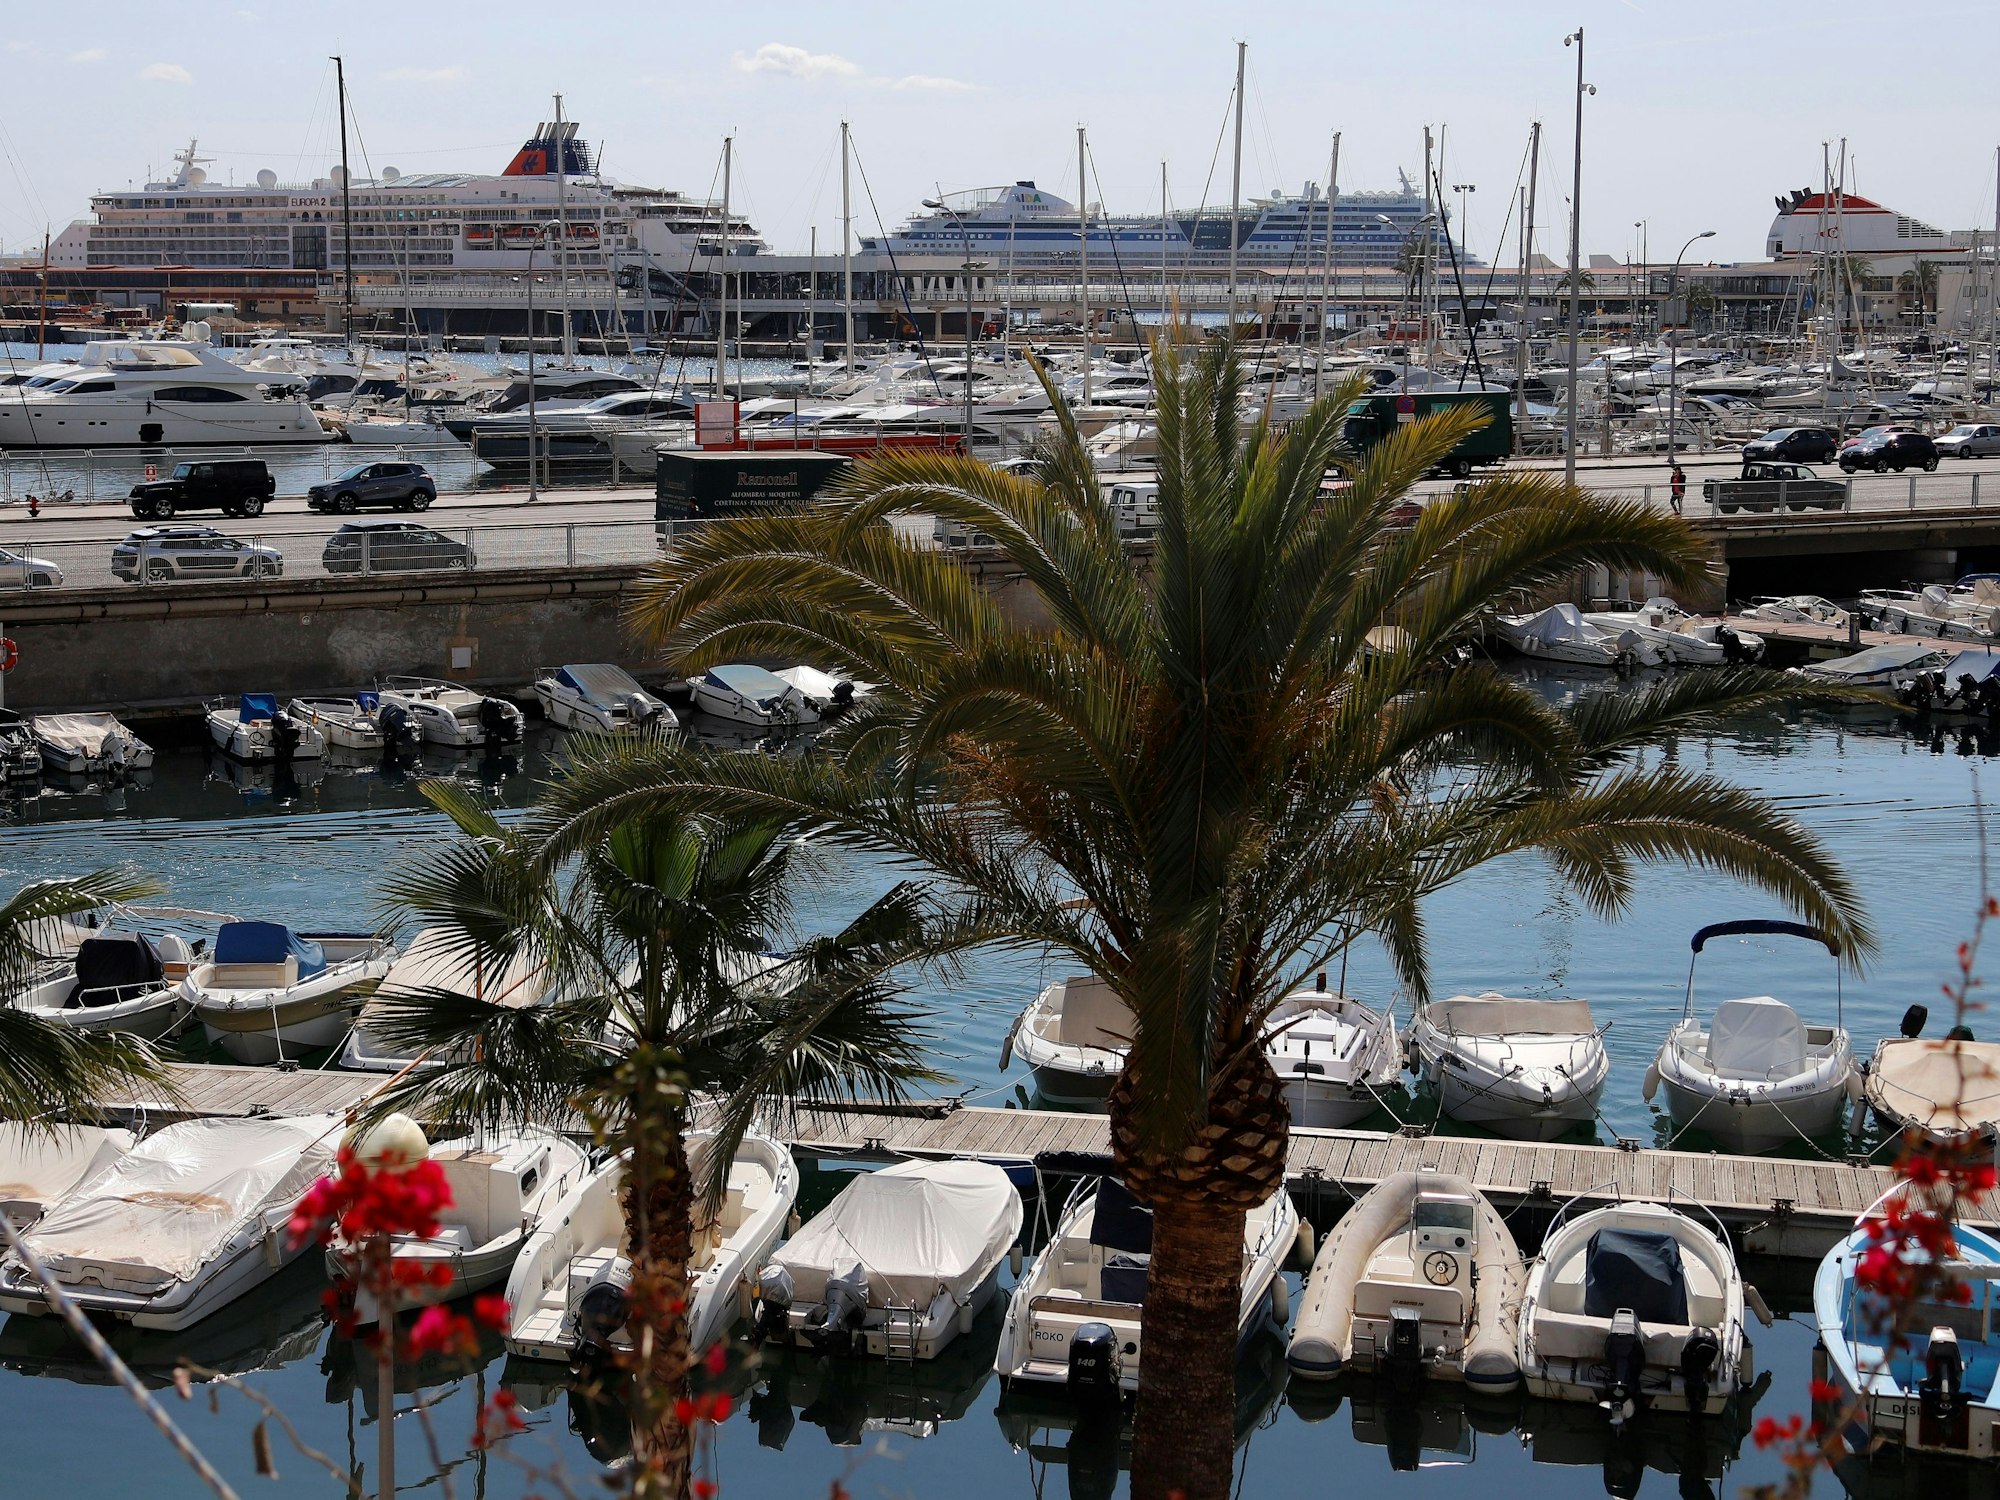 Urlauber haben im Hafen von Palma de Mallorca (hier ein Archivfoto) eine Leiche entdeckt.